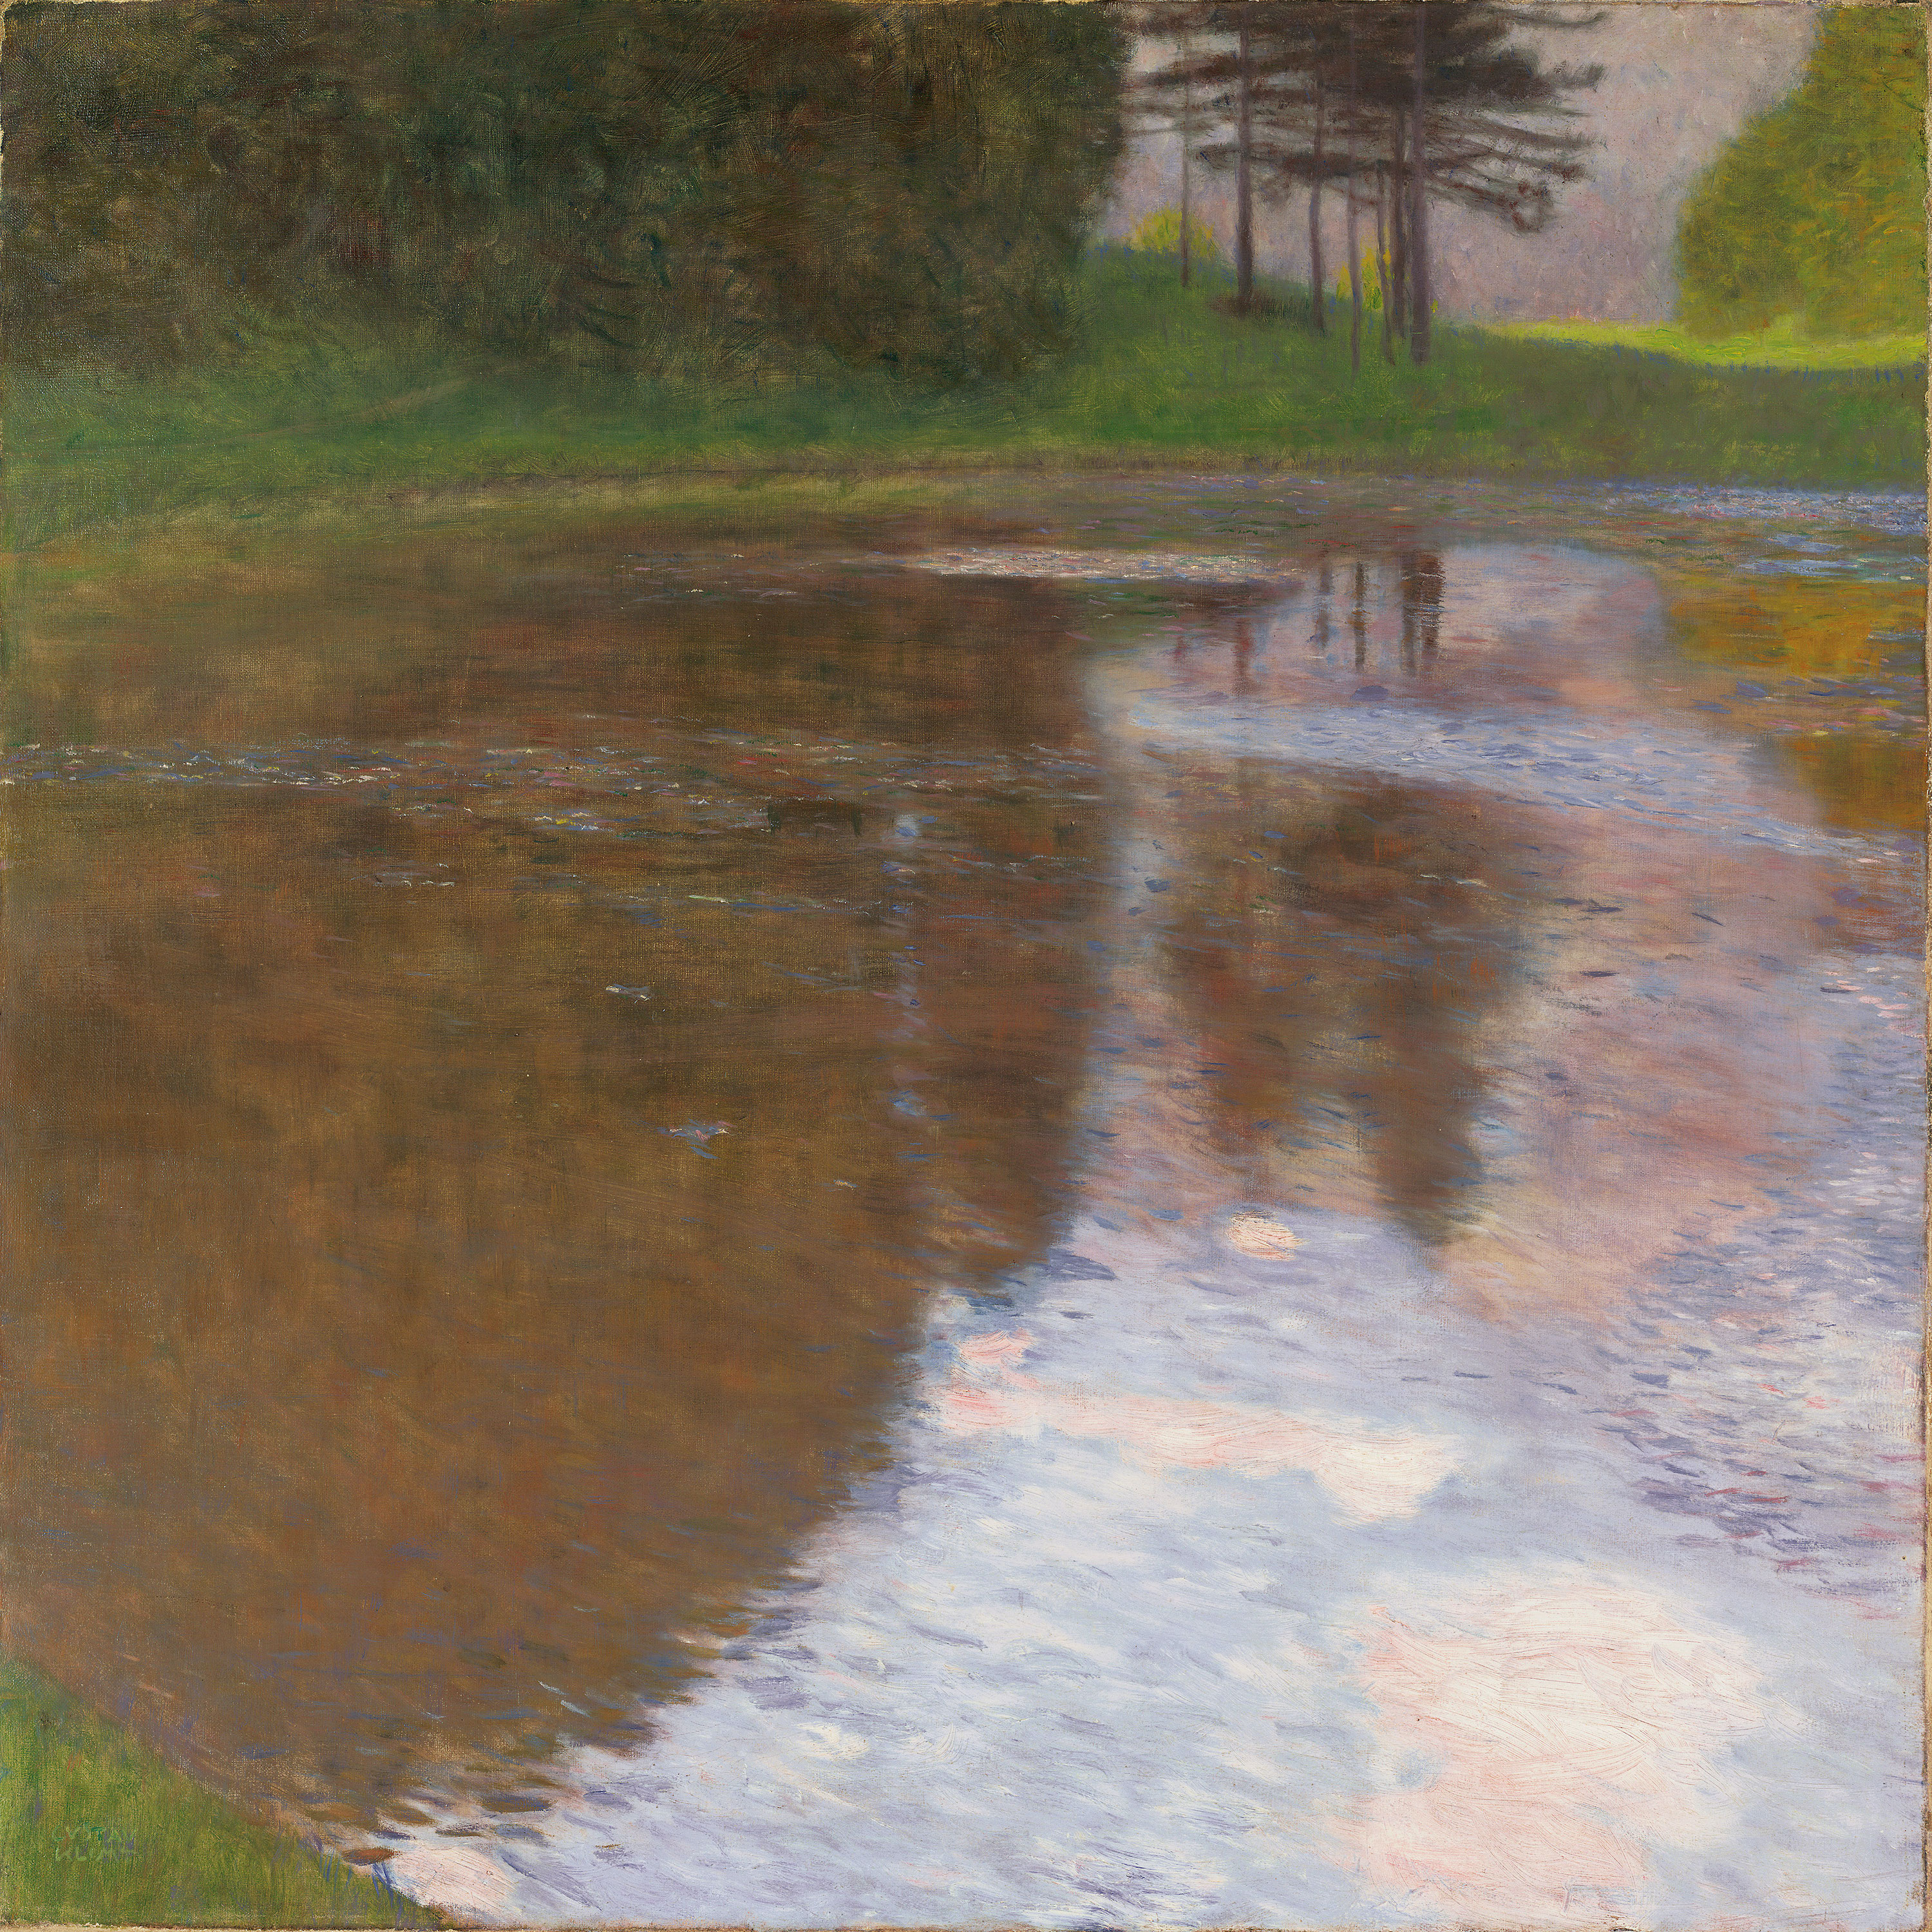 아침의 연못(A Morning by the Pond) by 구스타프 클림트 - 1899 - 75.1 x 75.1 cm 